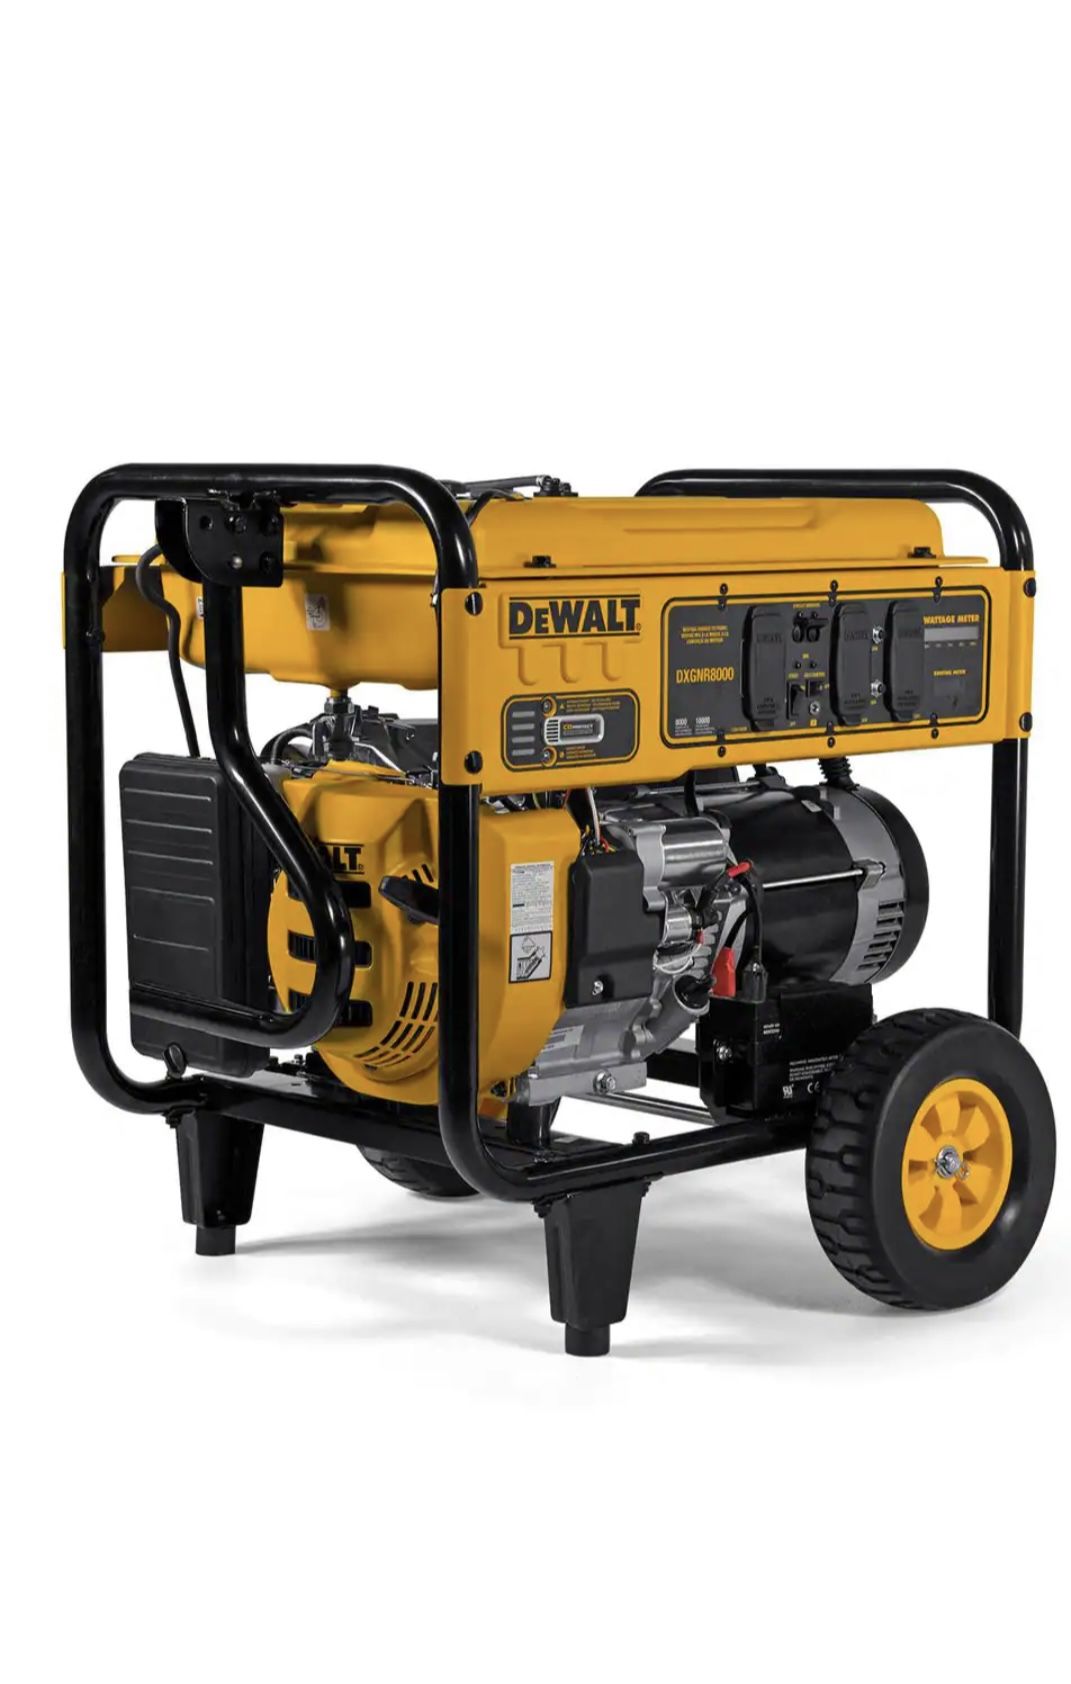 Generator DeWALT DXGNR8000 bought it for $1,600 Asking for $1,000